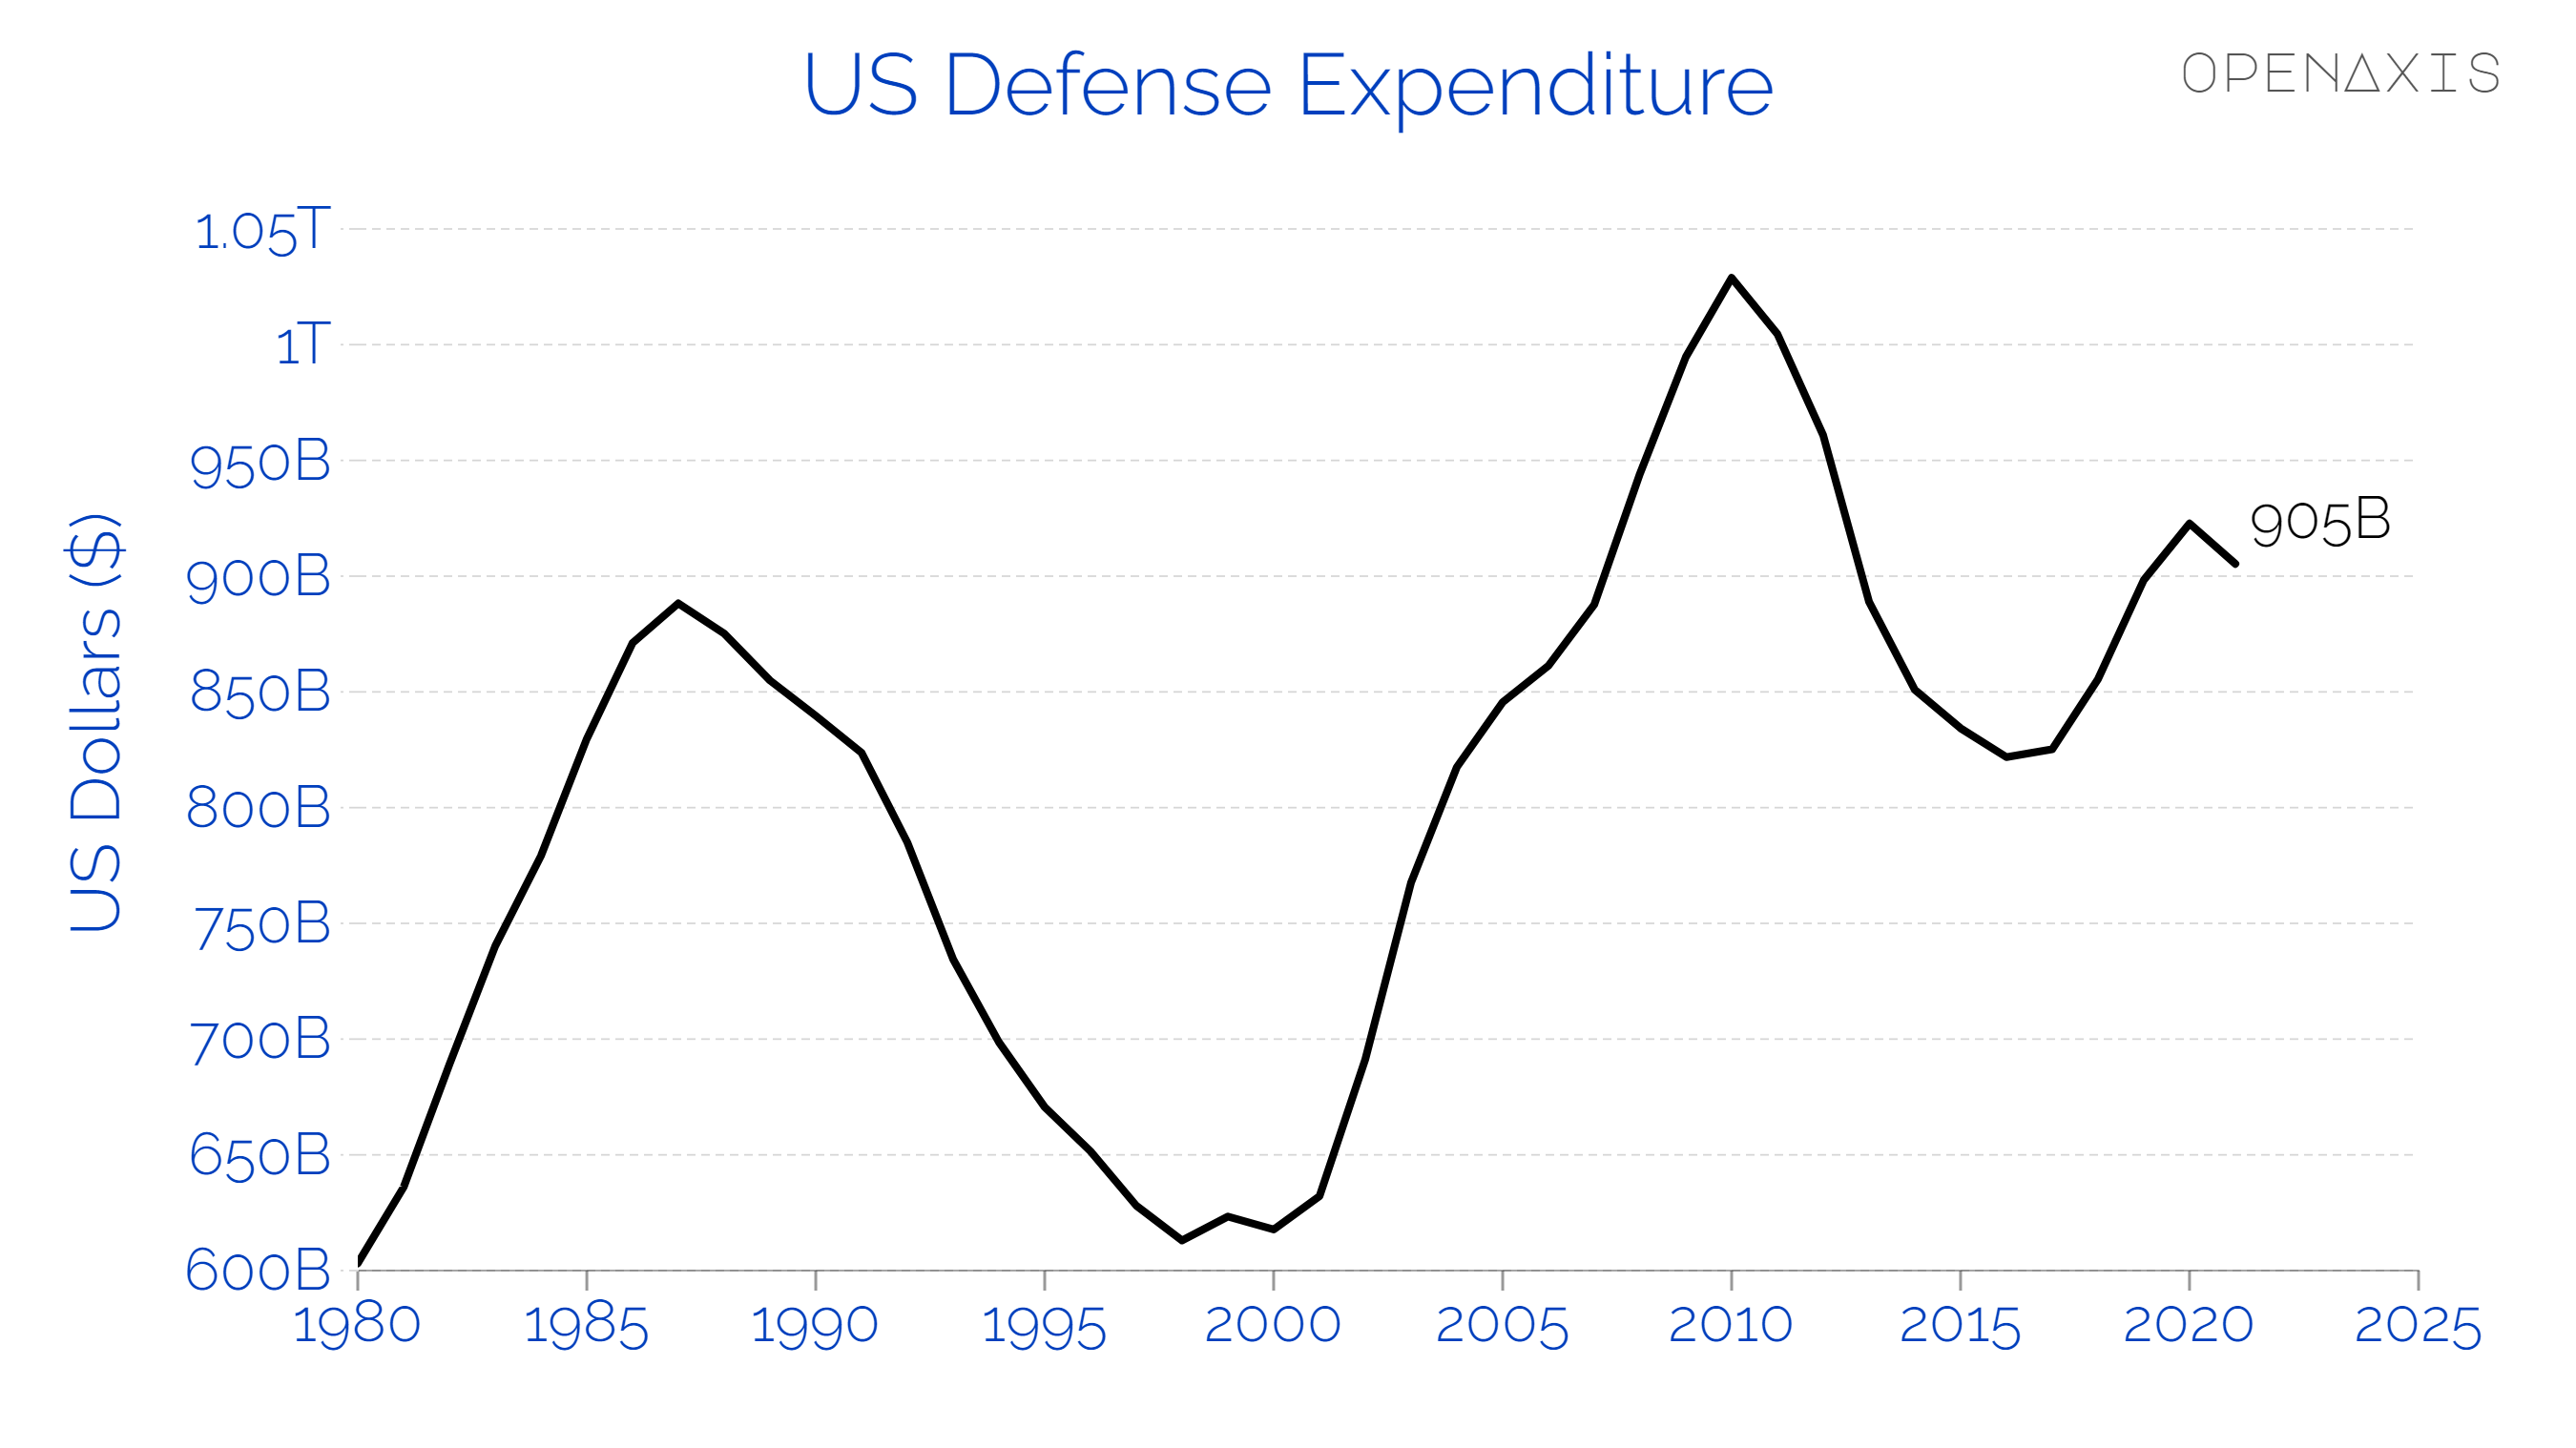 "US Defense Expenditure"